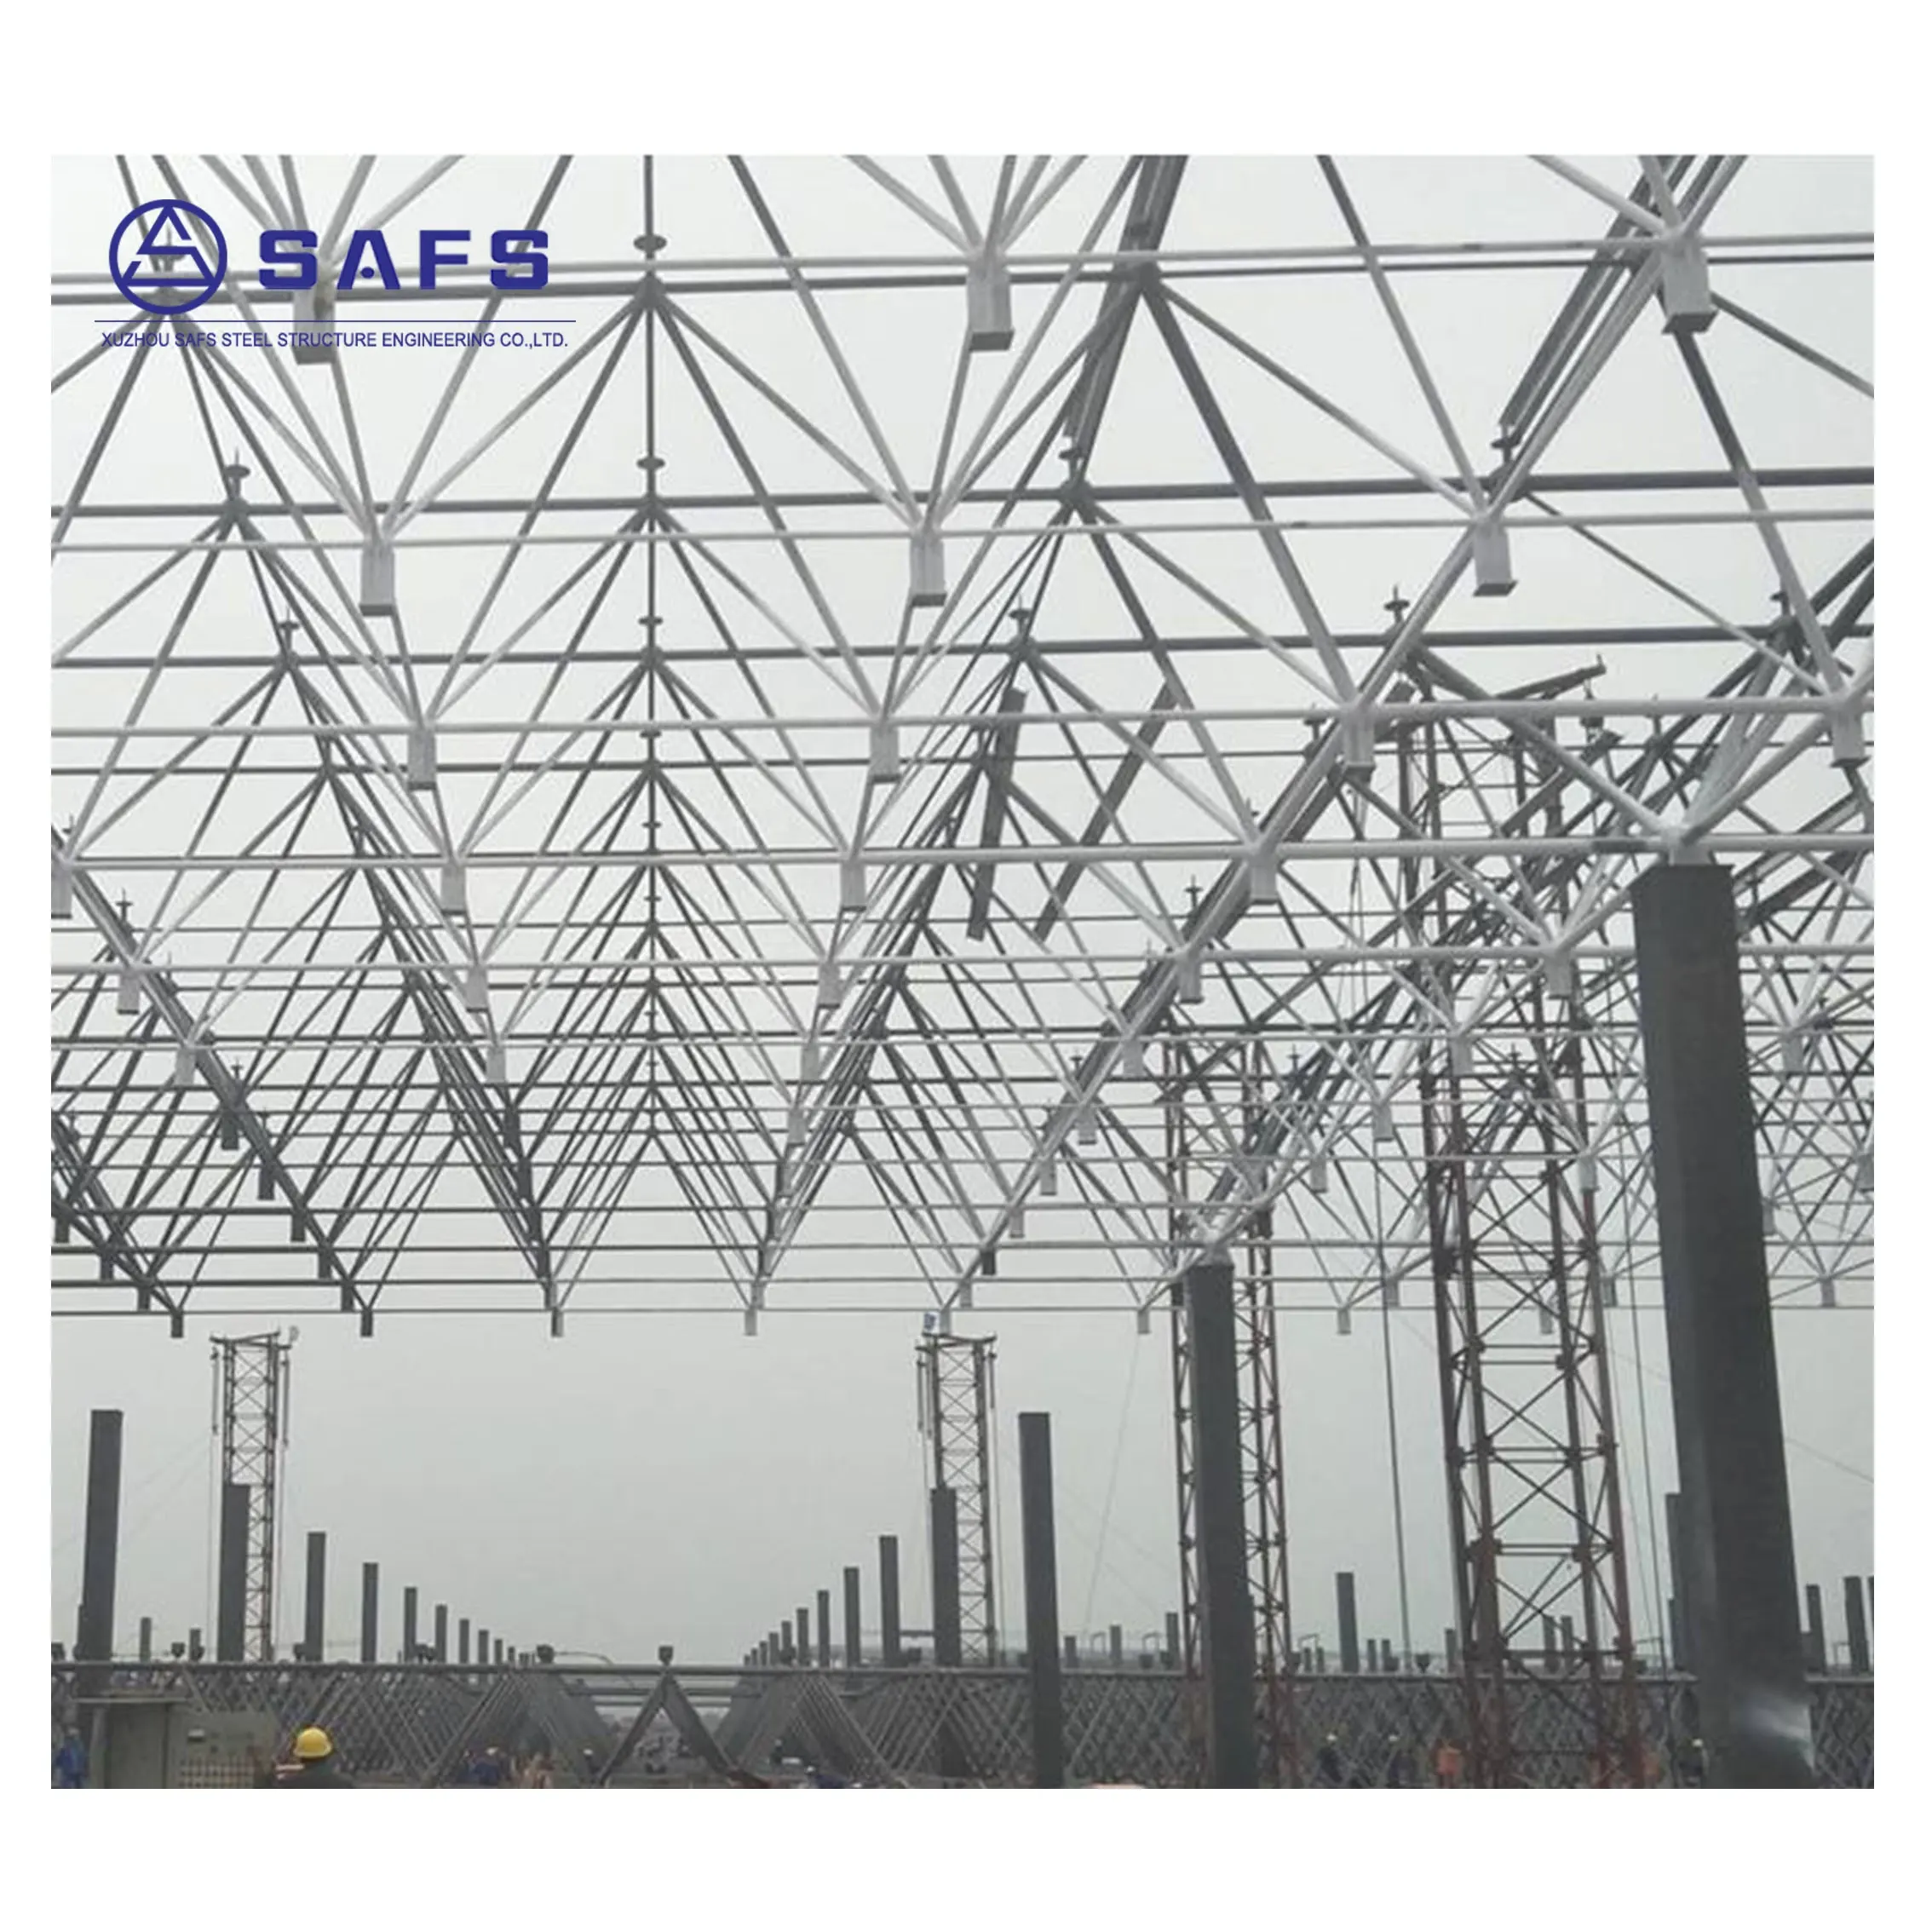 SAFS جودة عالية مساحة كبيرة هيكل فولاذية مسبقة الصنع مستودع مصنع صناعي قوي